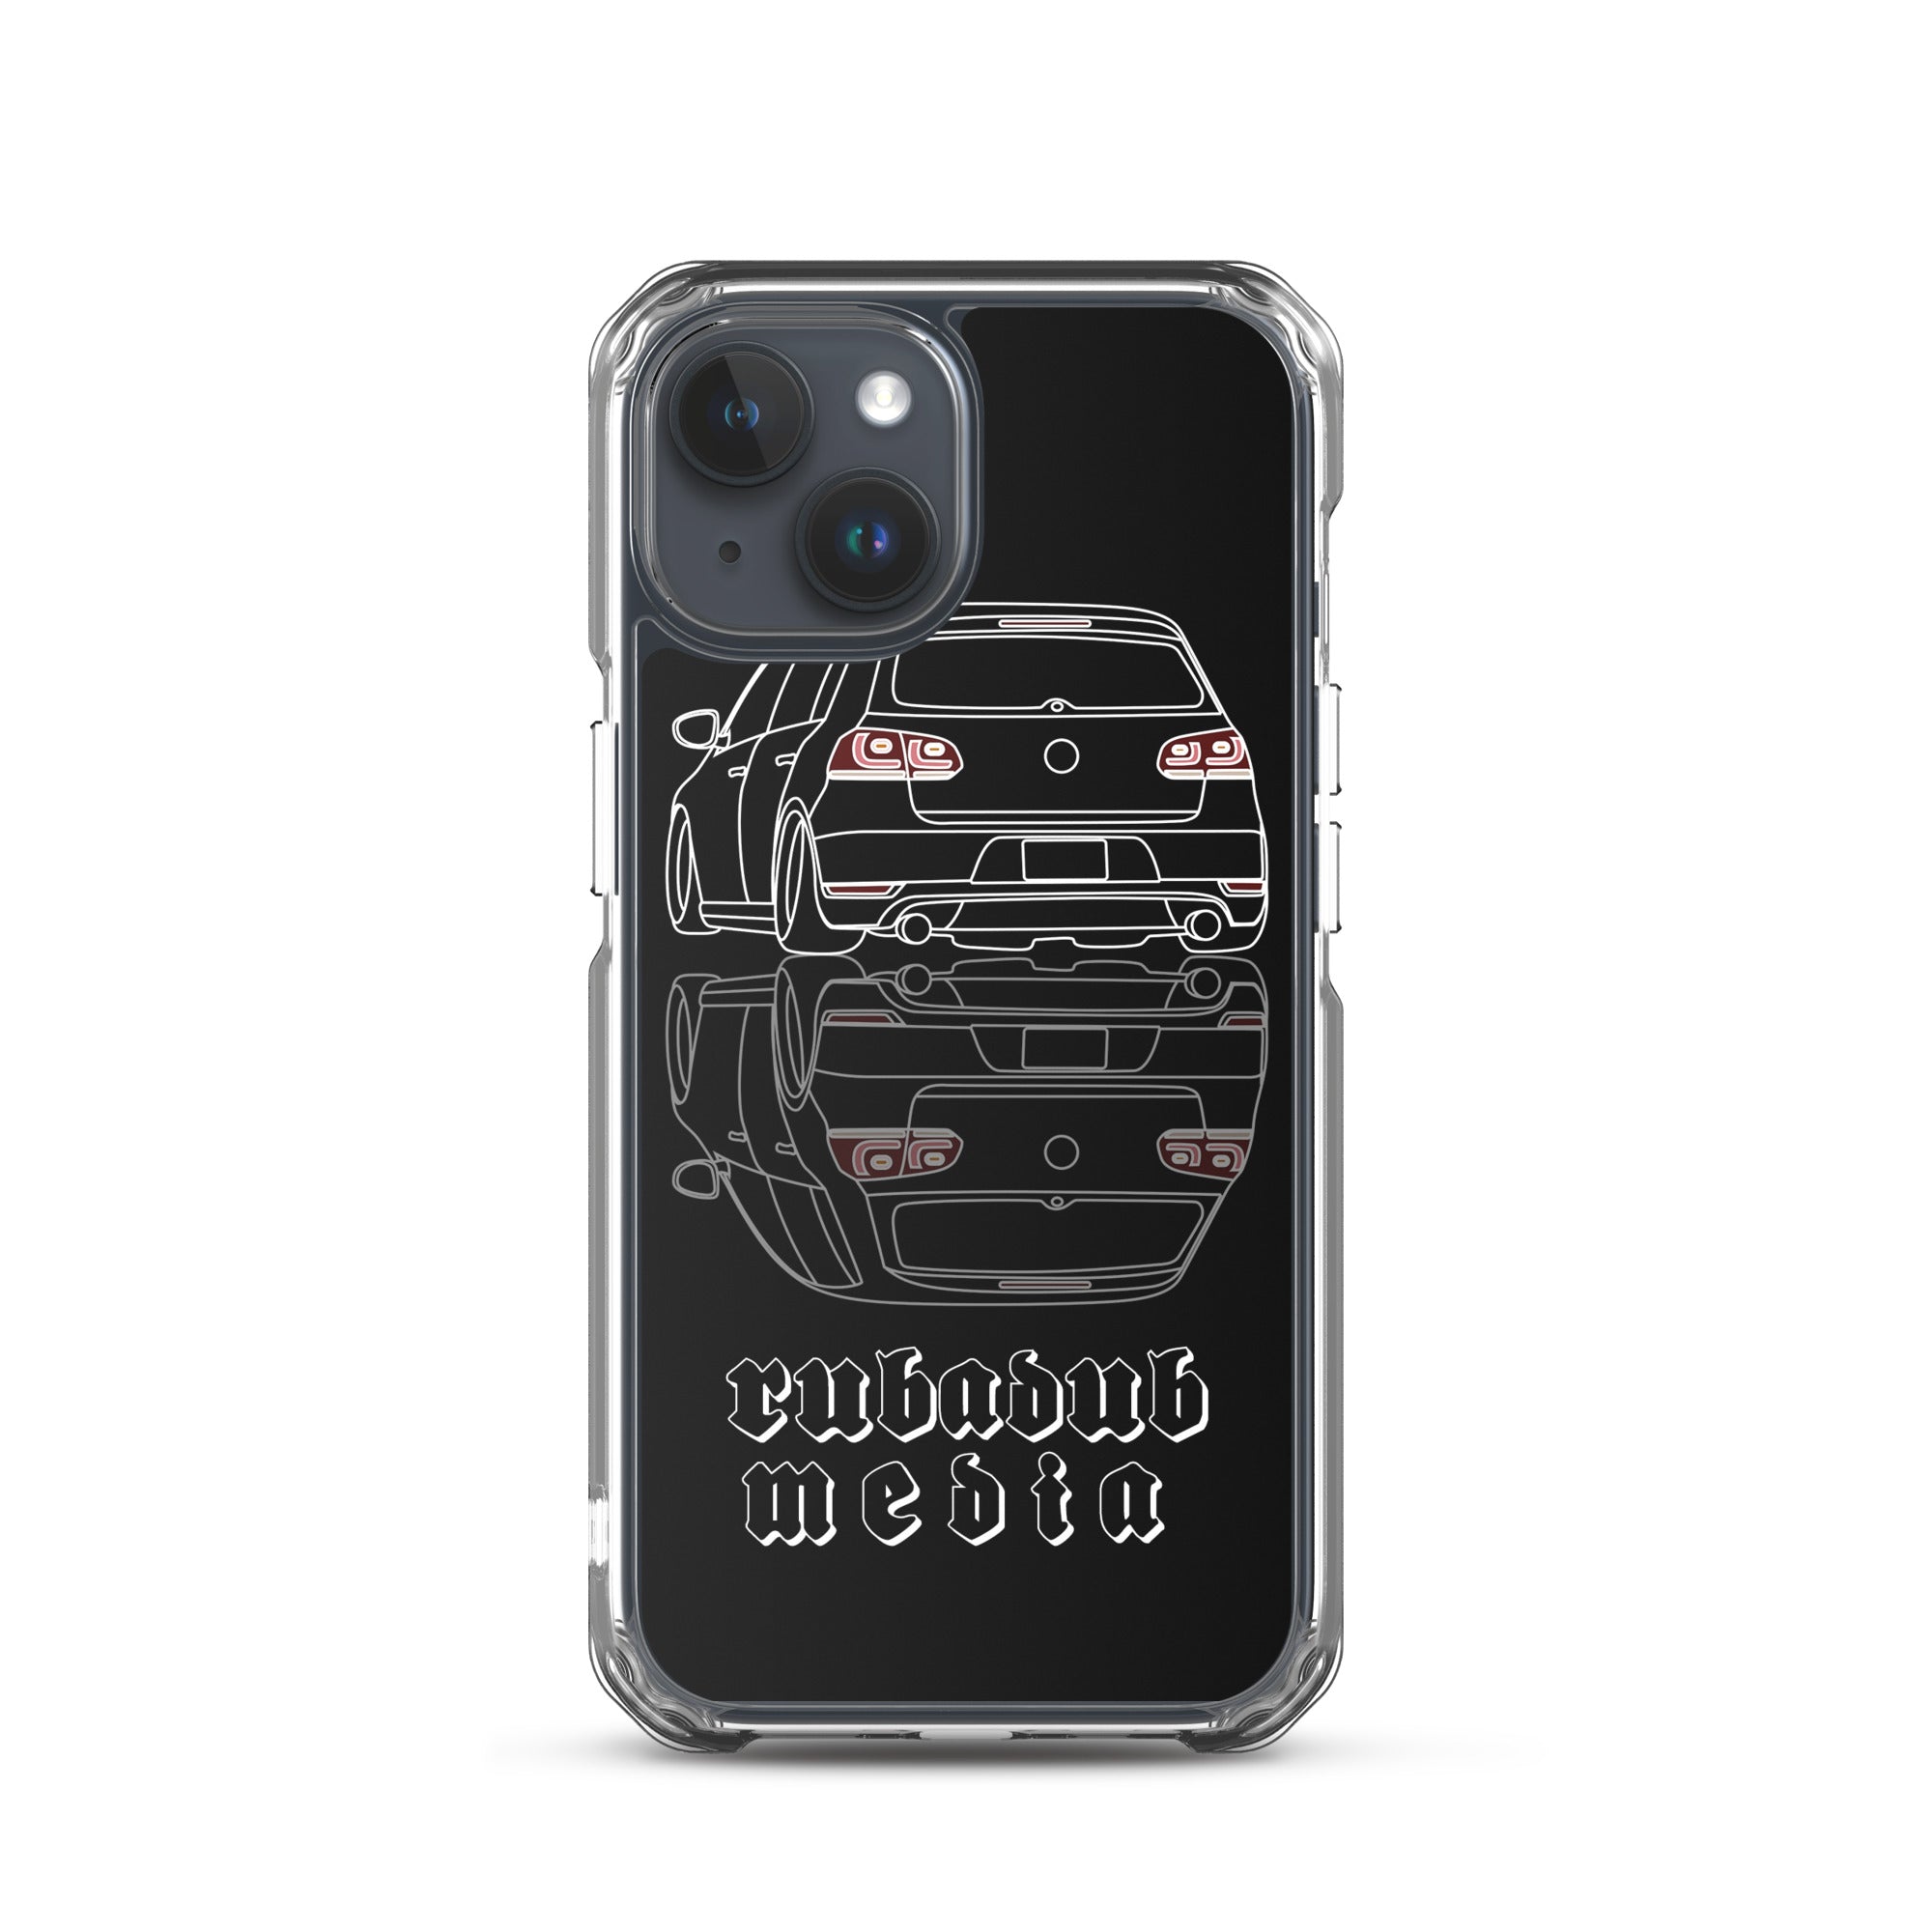 Mk6 Golf iPhone Case